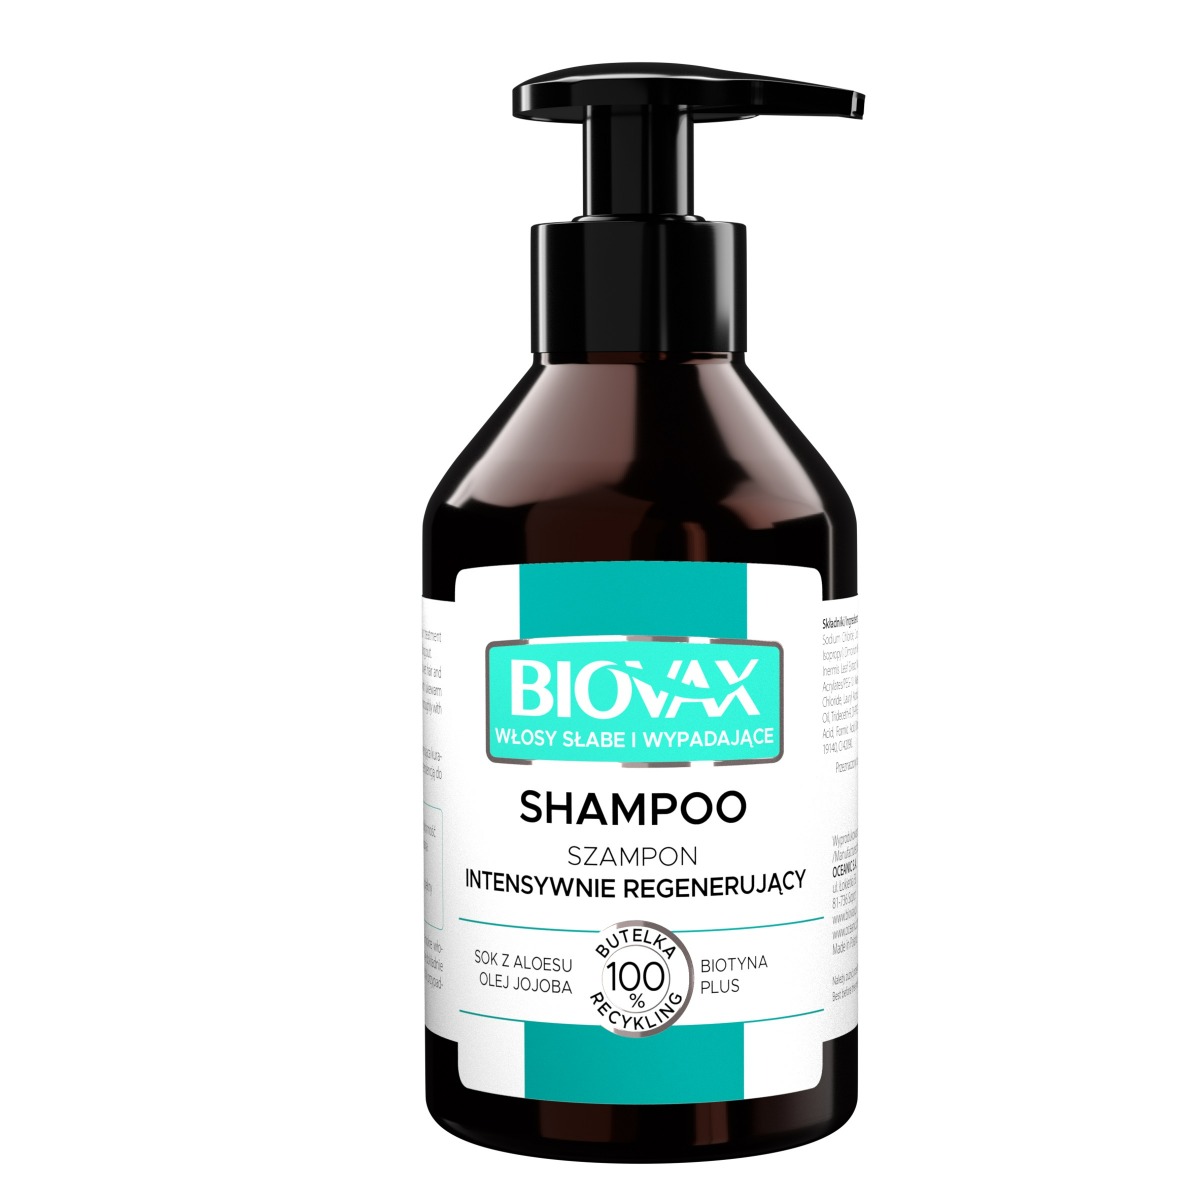 biovax szampon do włosów ciemnych allegro